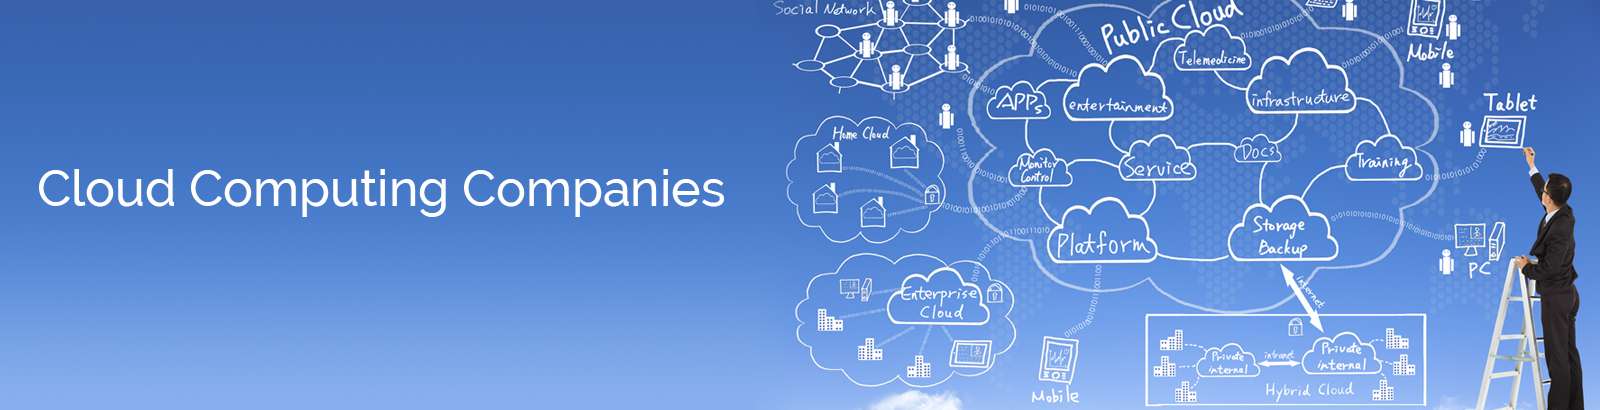 Cloud Computing Companies